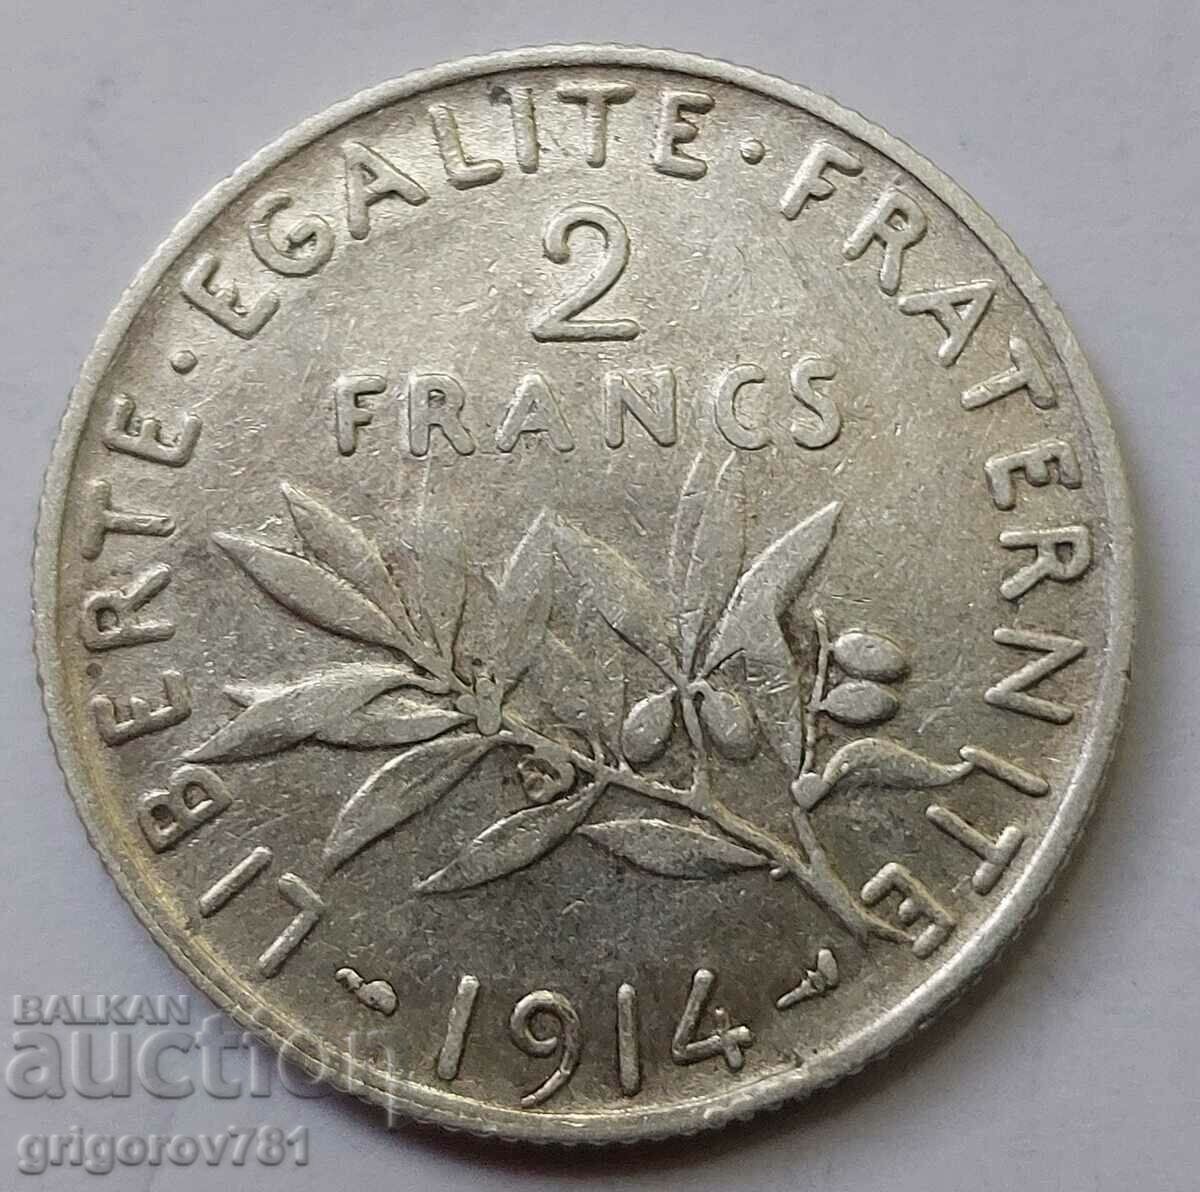 2 Franci Argint Franta 1914 - Moneda de argint #111